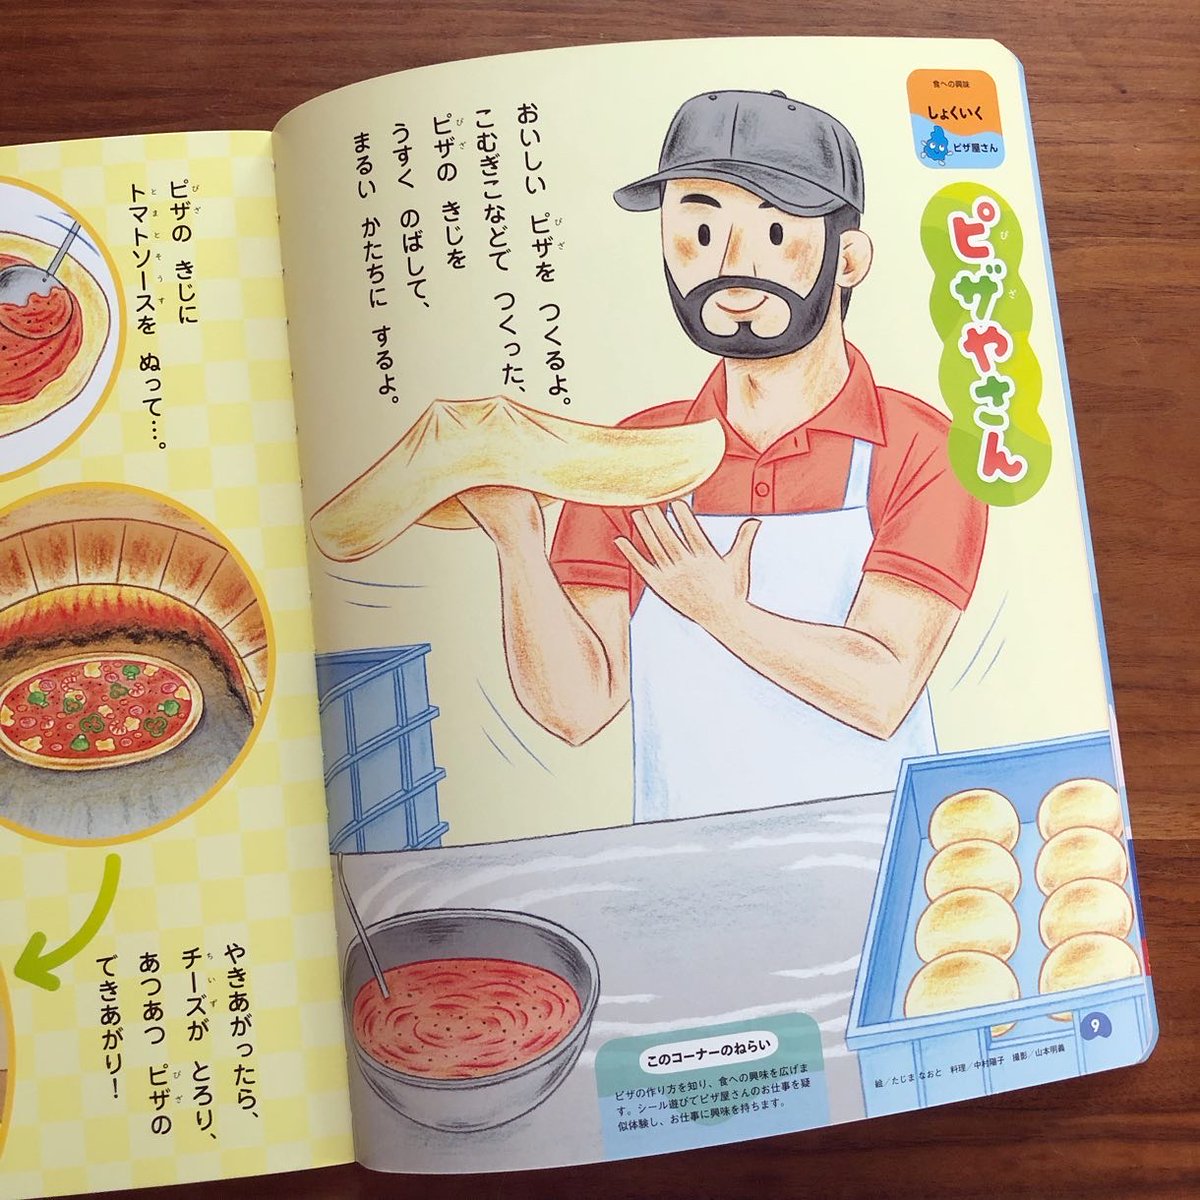 がっけんつながるえほん「なんで?」9月号の食育ページはピザ屋さんを描きました。🍕